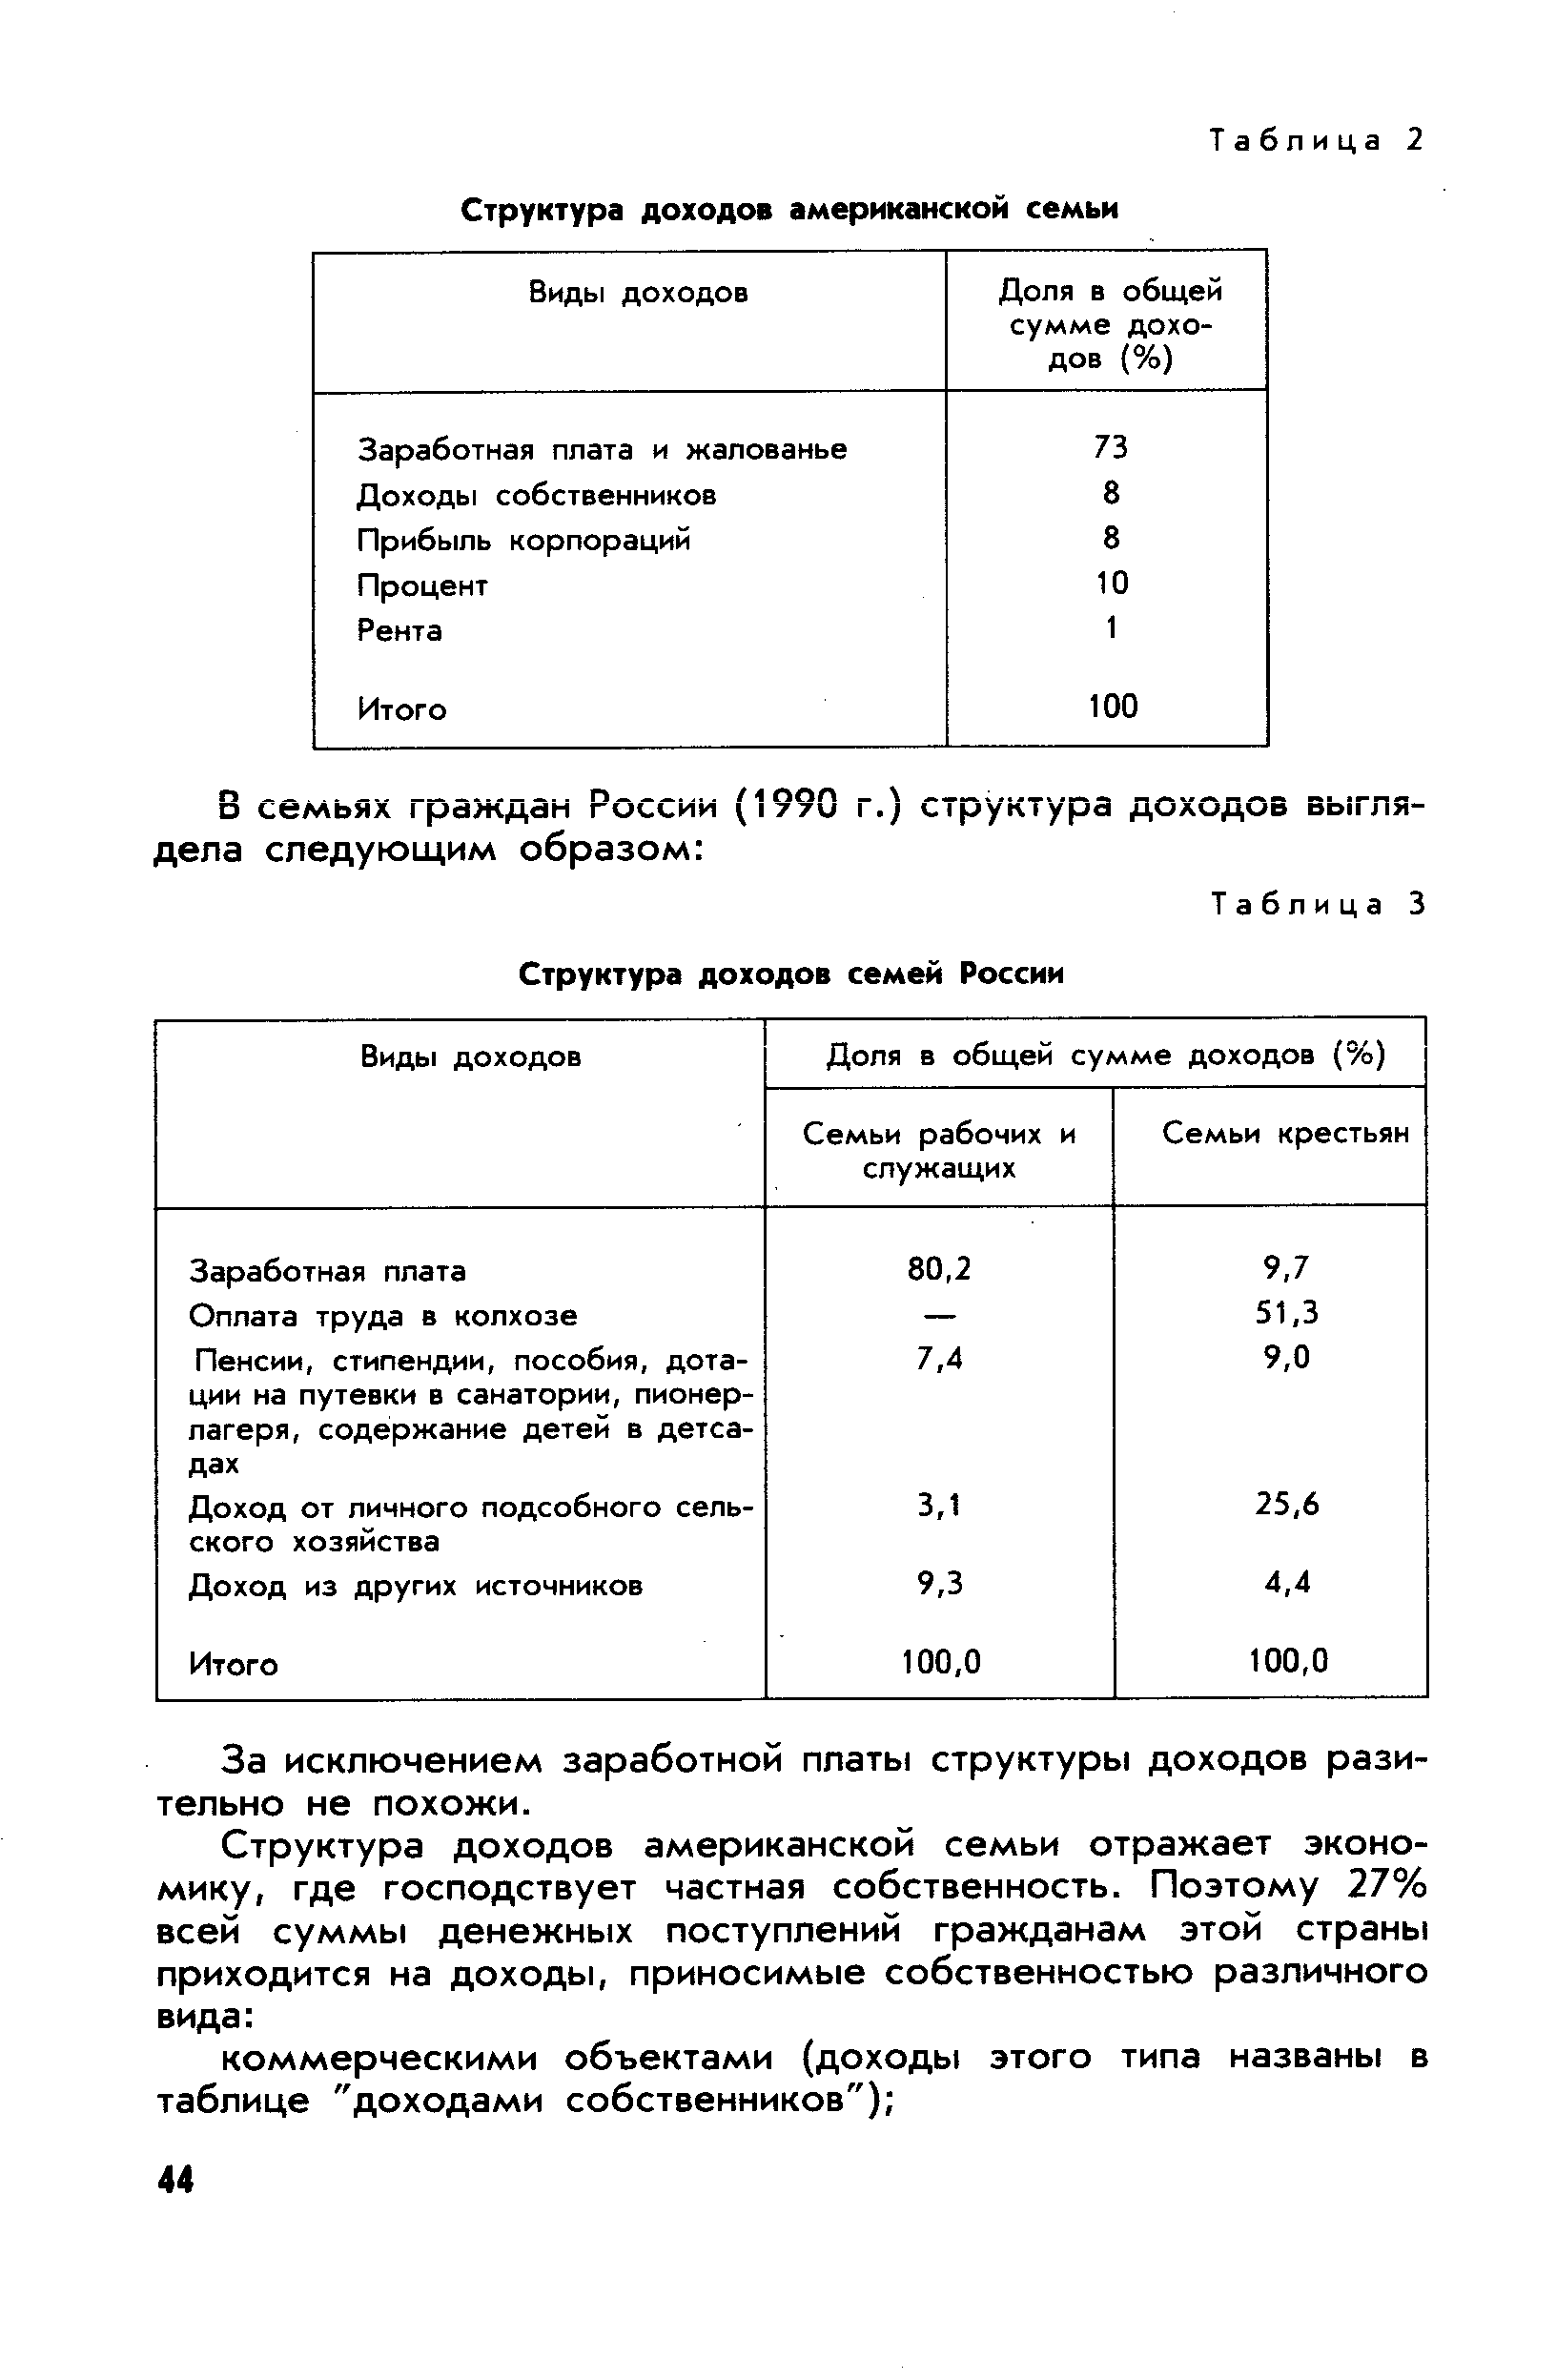 Таблица 3 Структура доходов семей России
